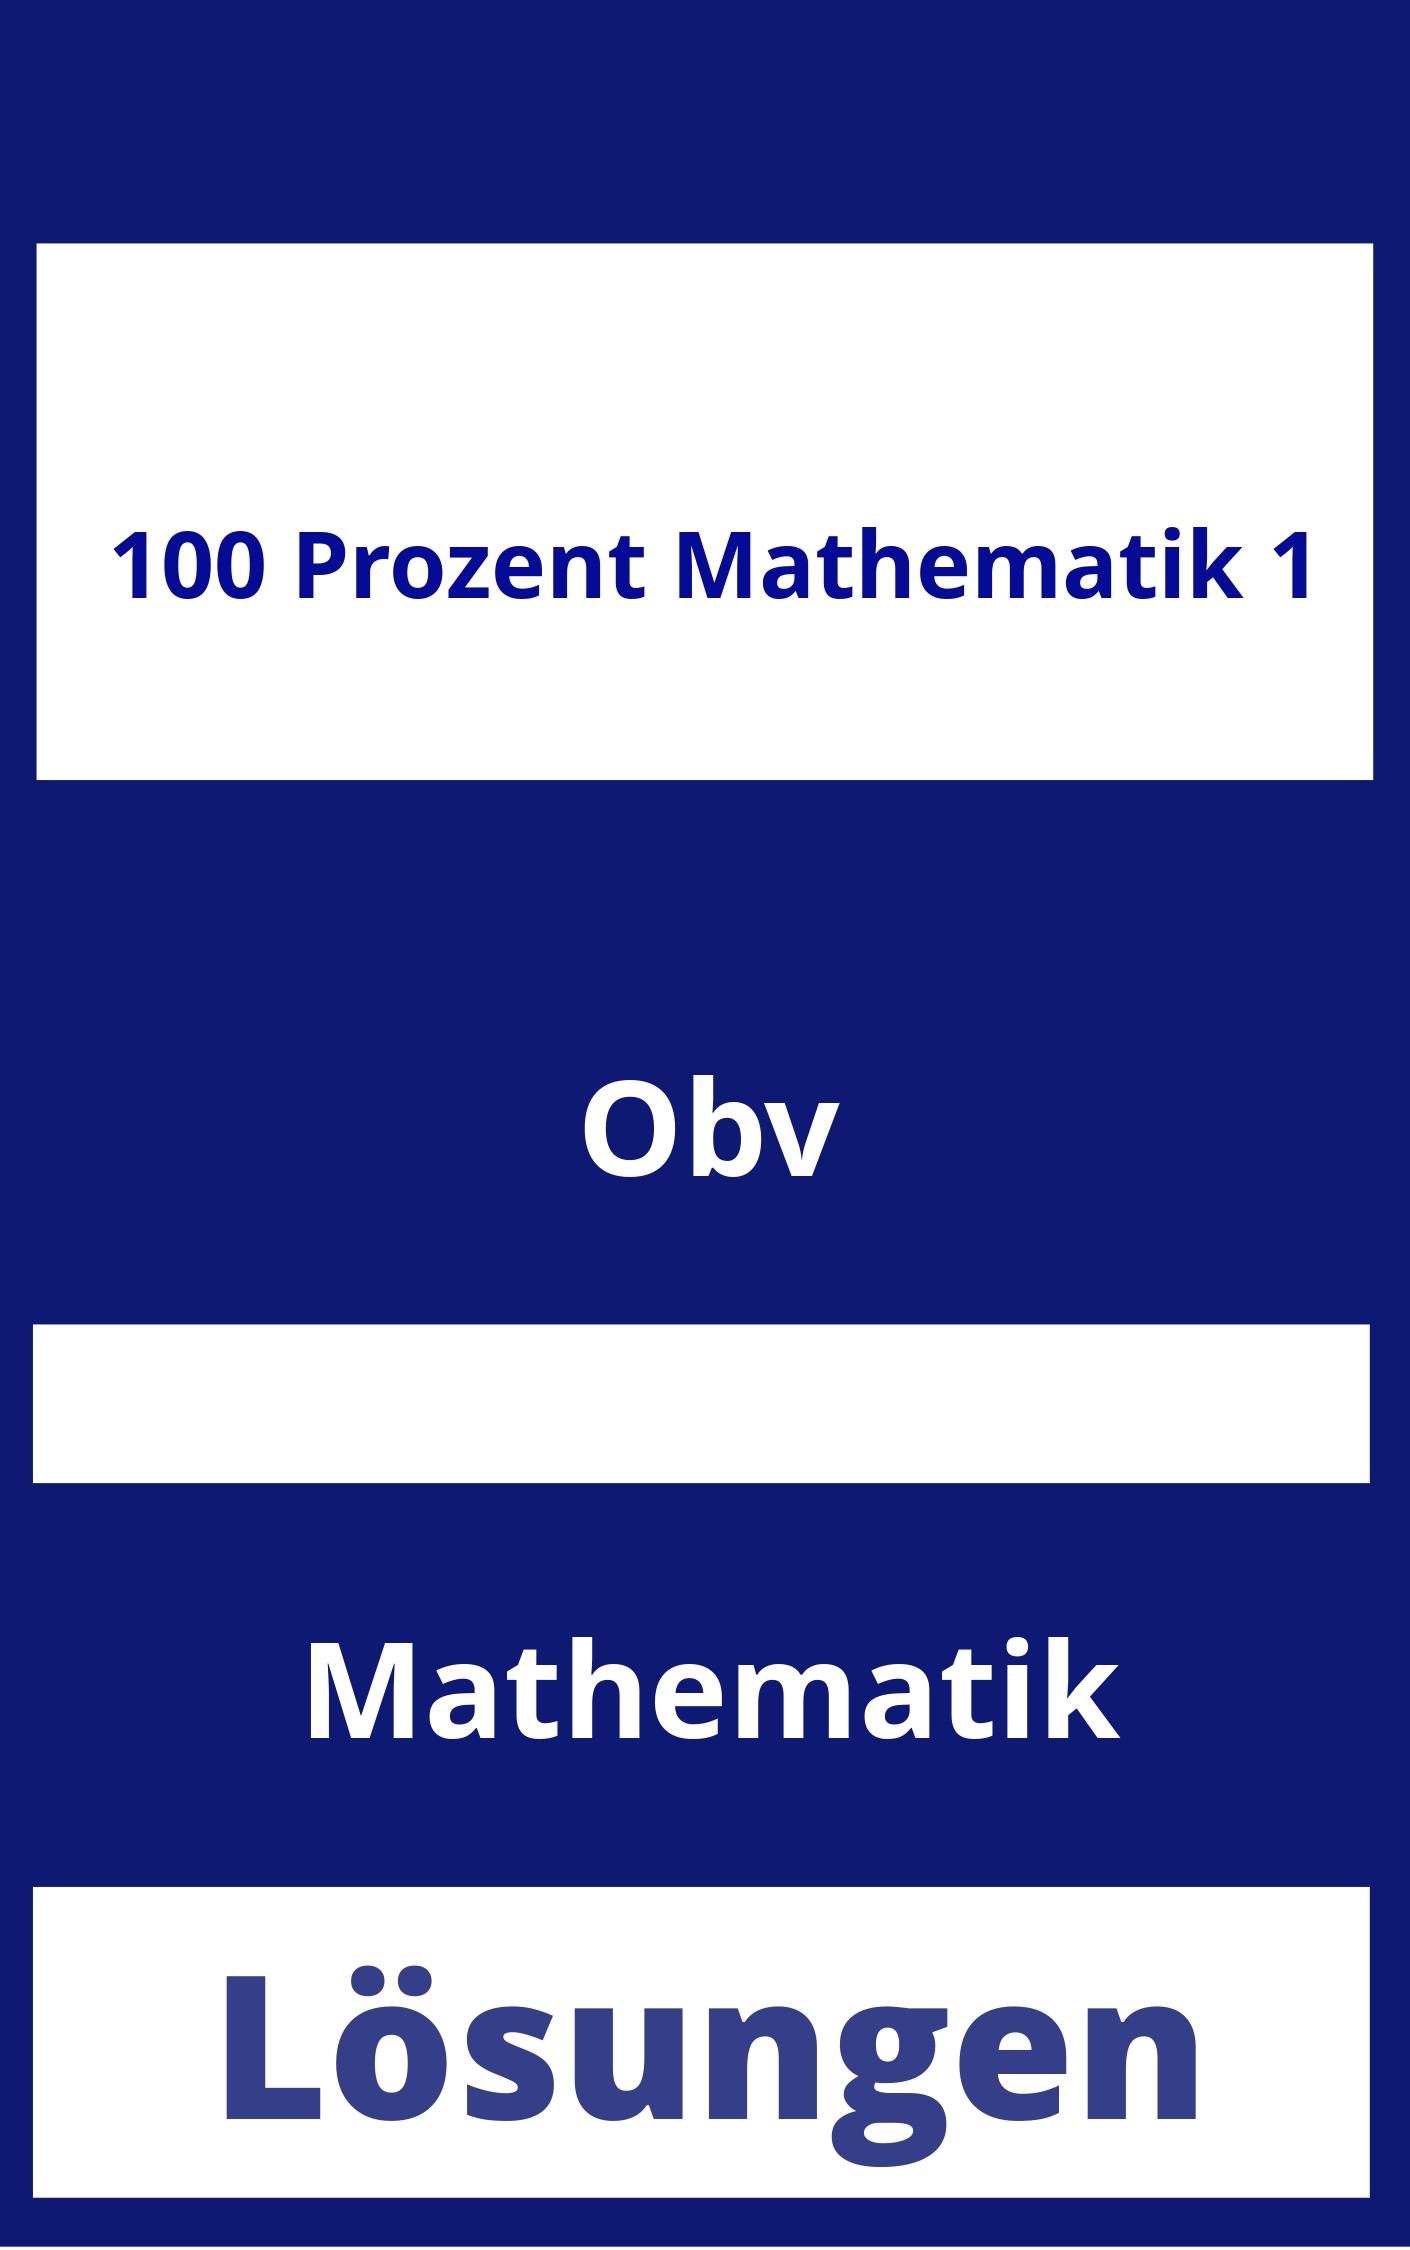 100 Prozent Mathematik 1 Lösungen PDF